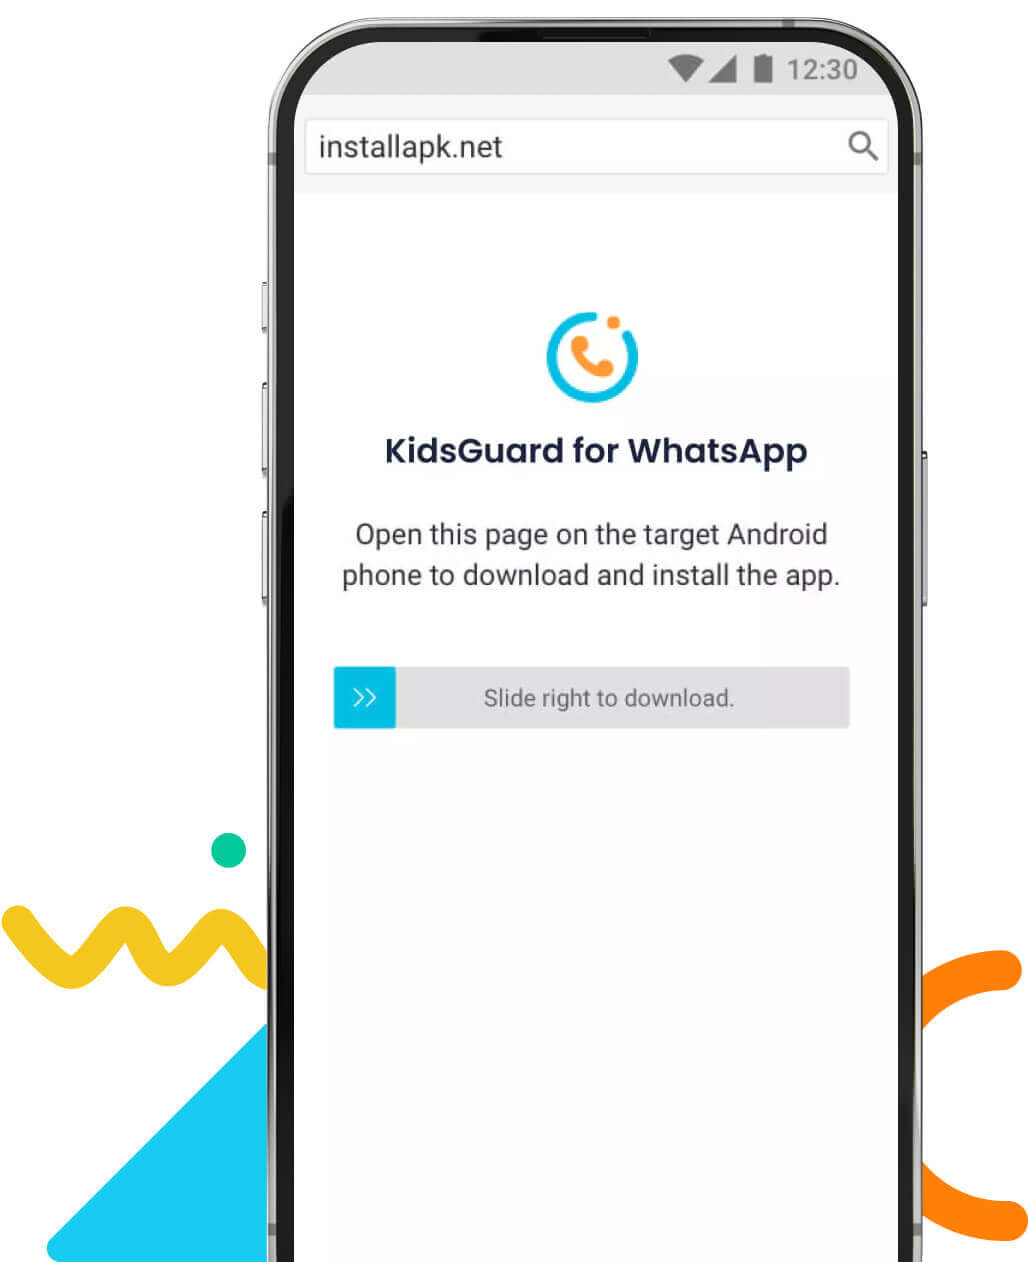 Loggen Sie sich bei KidsGuard für WhatsApp ein